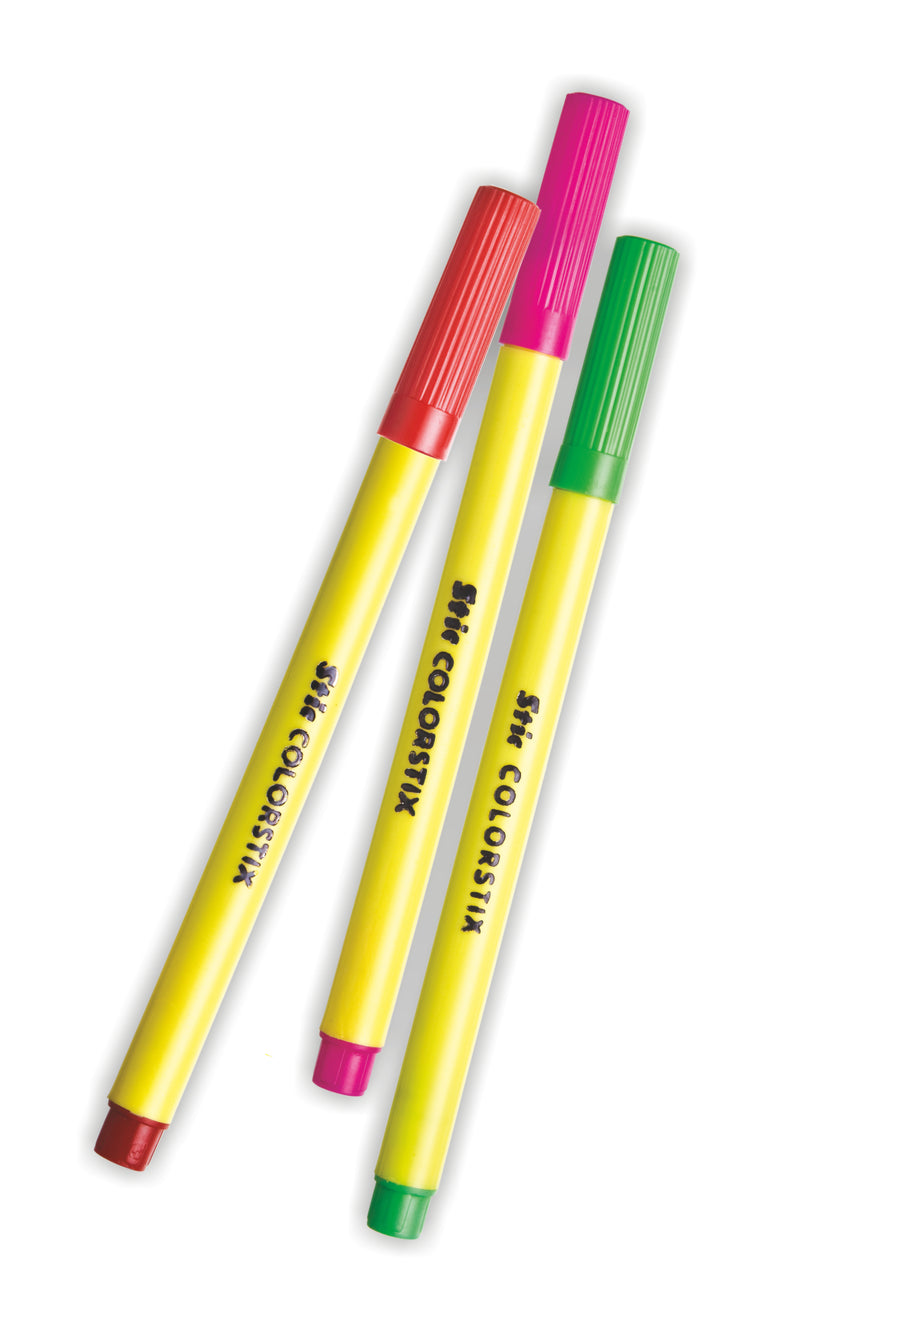 Details more than 119 colour stick sketch pens super hot